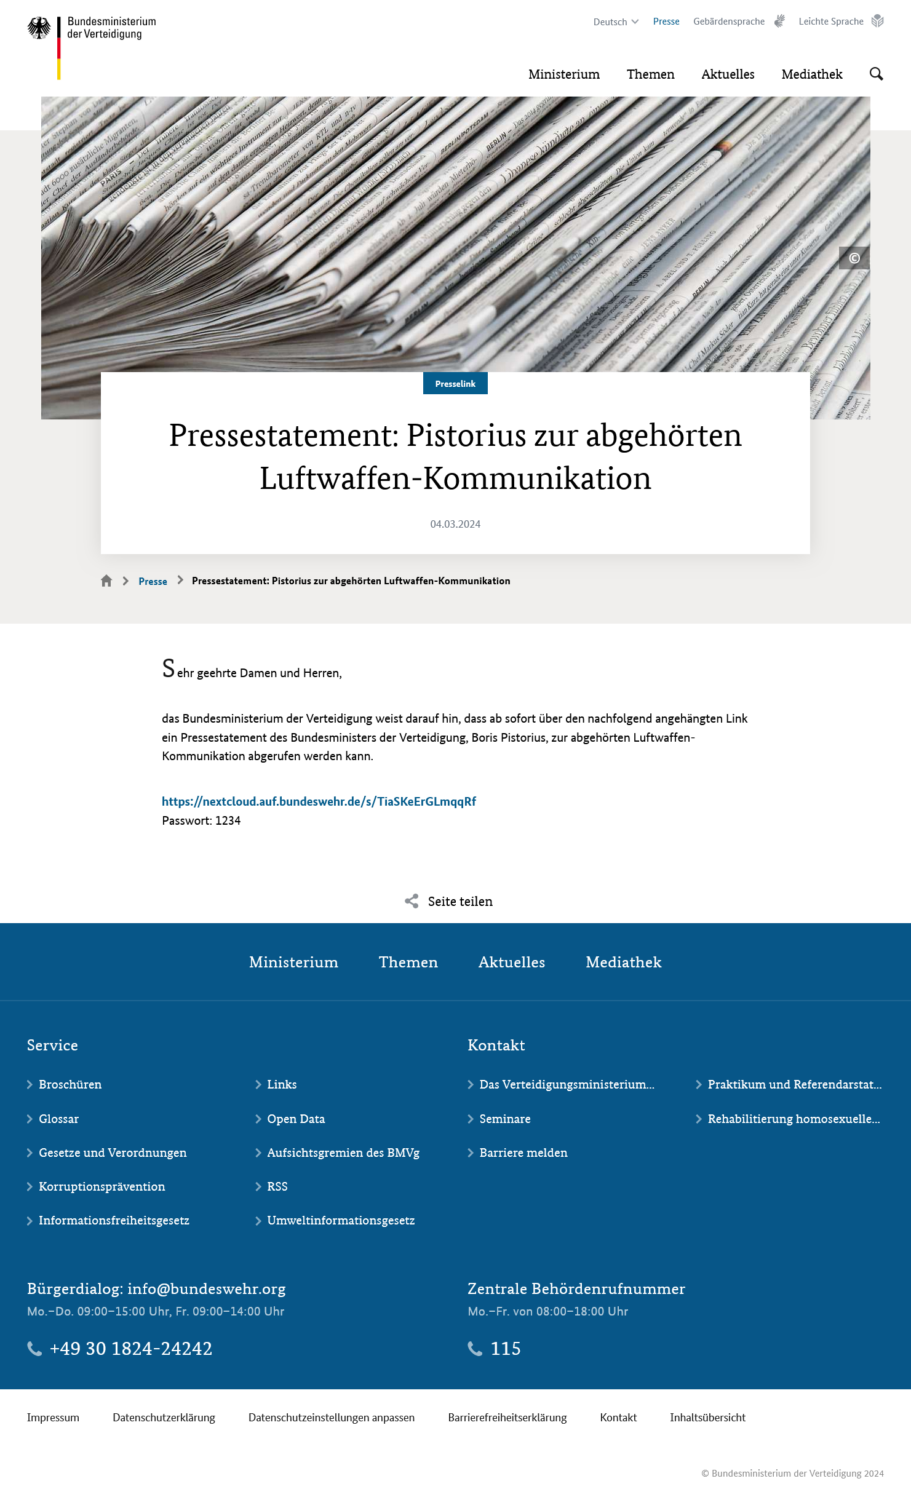 Screenshot der Website des Bundesministeriums de vertediigung mit der Pressemeldung, die auf einen LInk bei der Bundeswehr zeigt und darunter ein Passwort 1234 angibt.